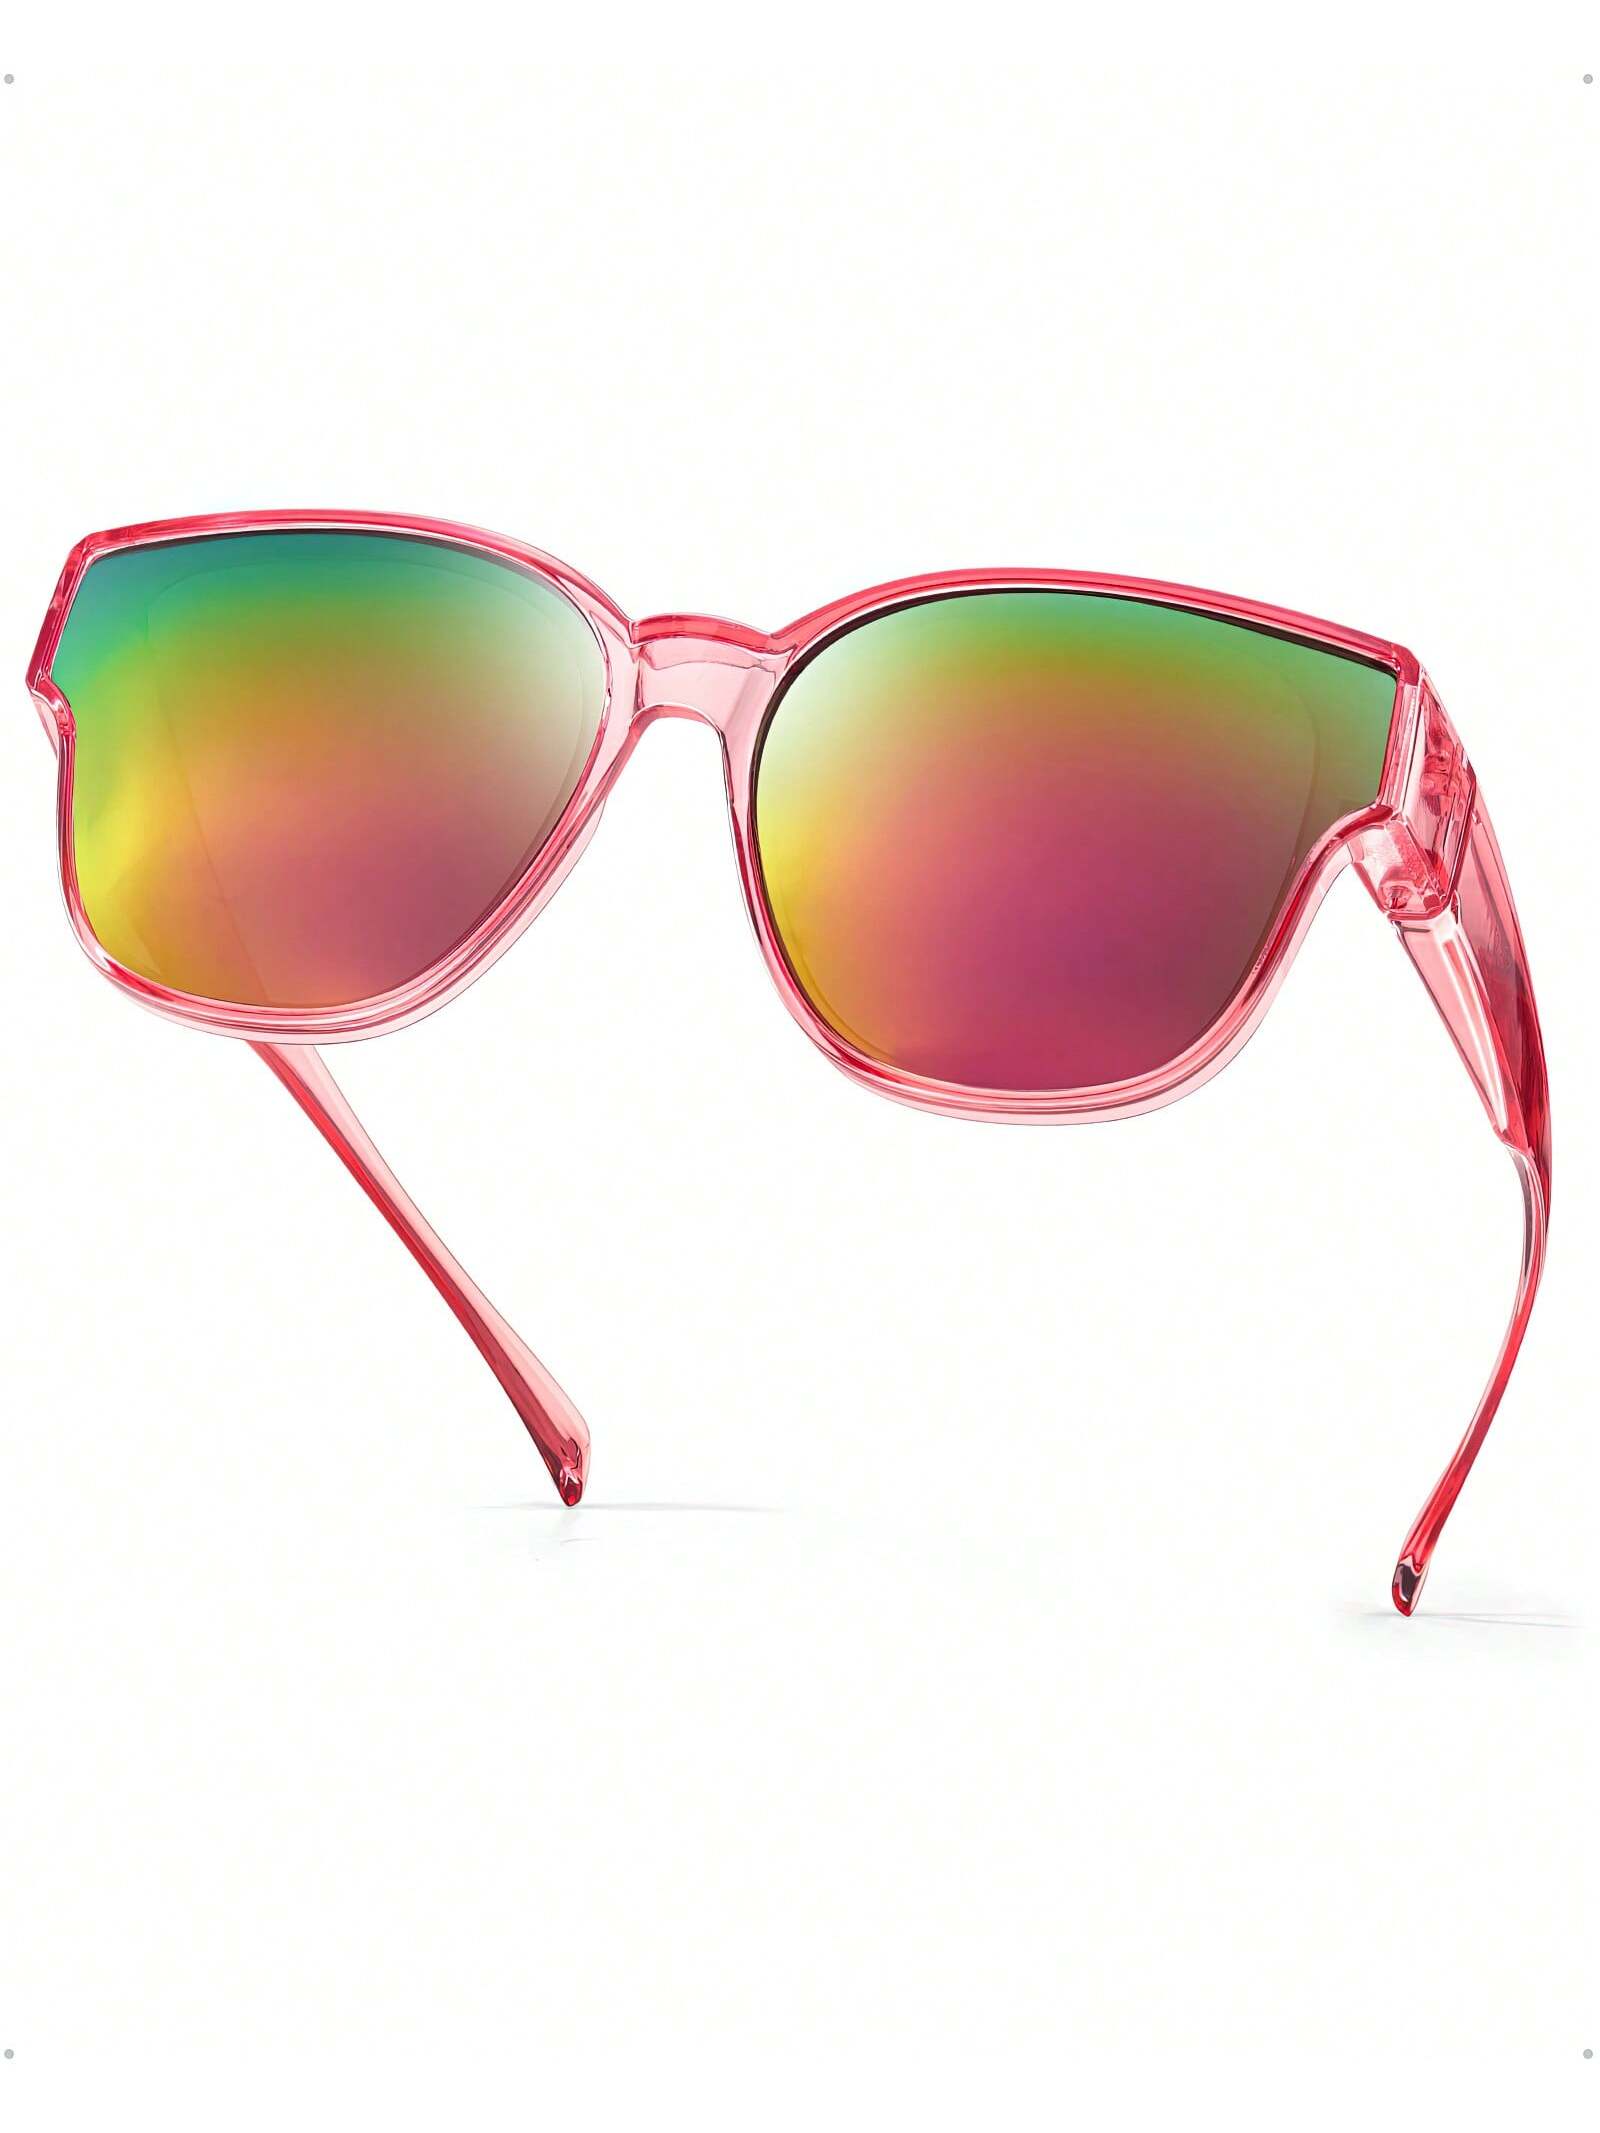 LVIOE поляризационные солнцезащитные очки для женщин и мужчин очки для плавания по рецепту профессиональные силиконовые противотуманные очки очки для плавания очки для дайвинга для женщин и мужчин п